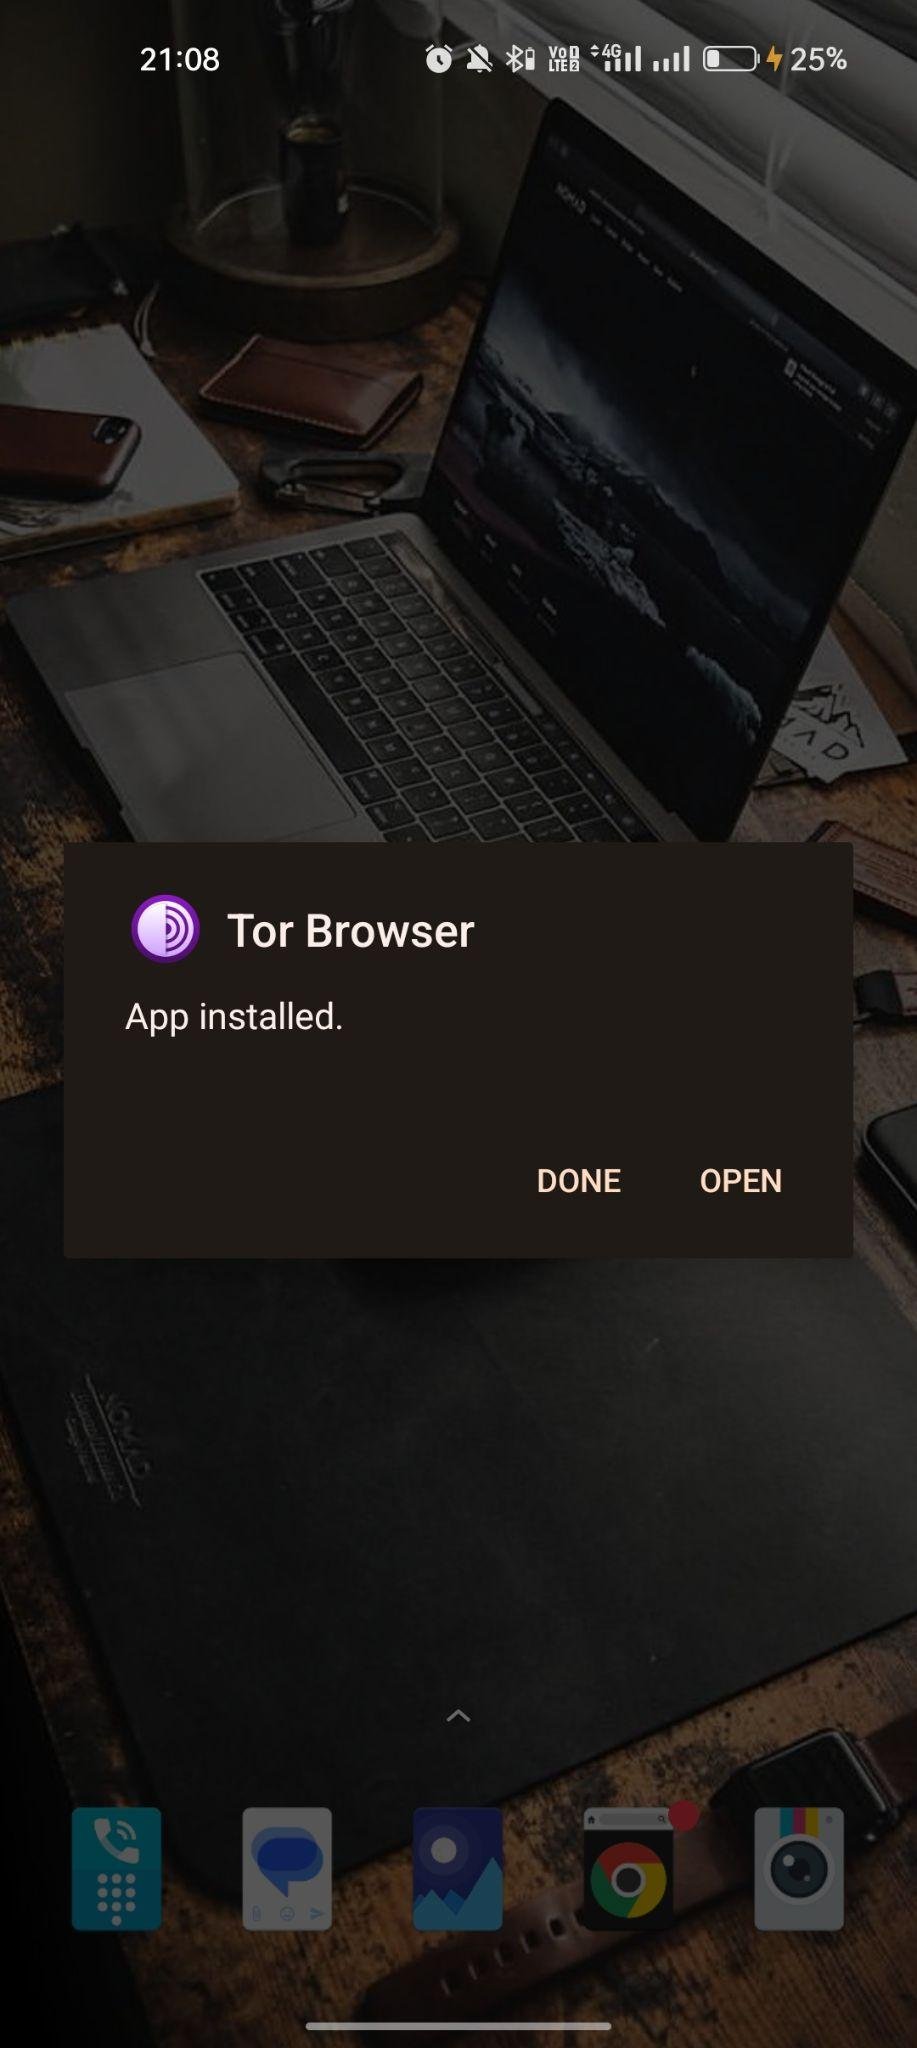 TOR Browser apk installed